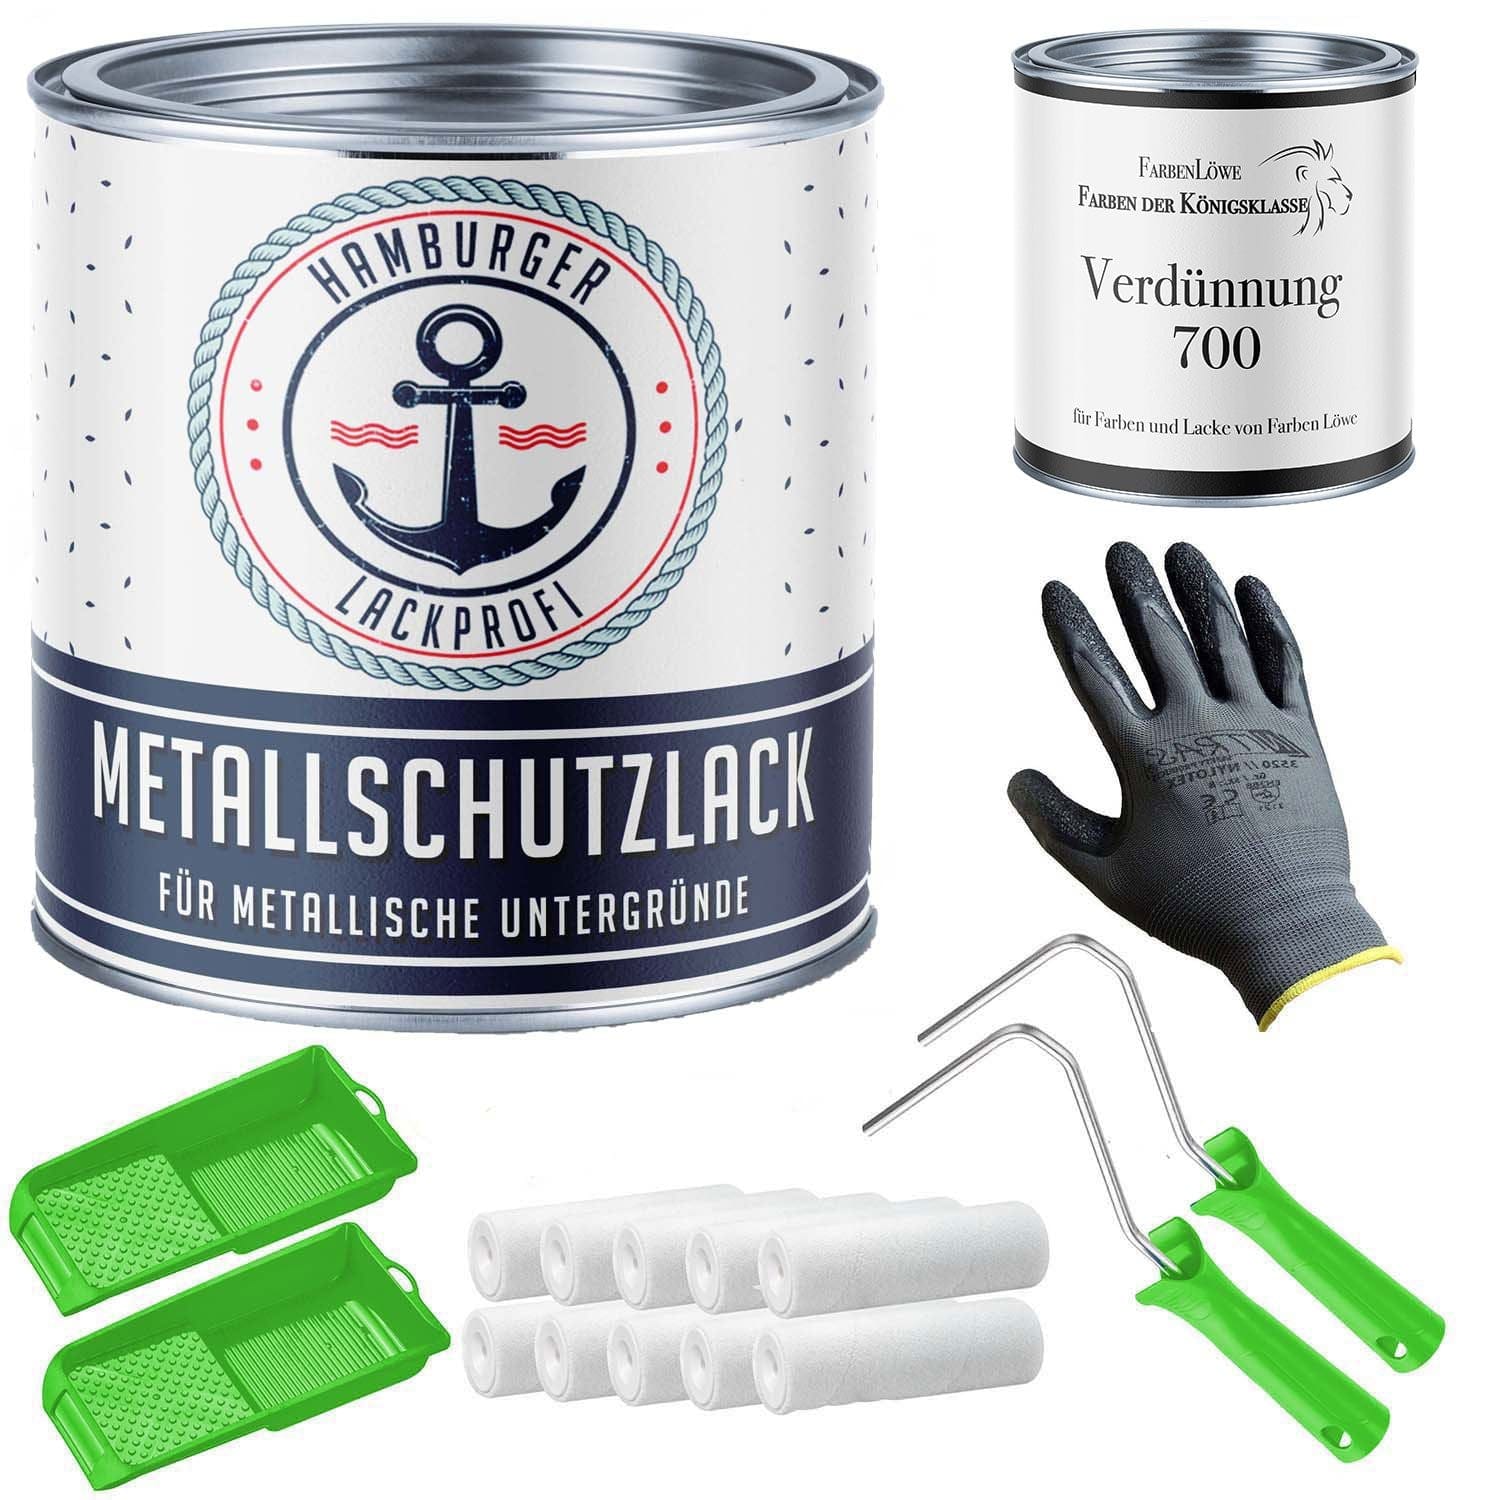 FARBENLÖWE Lacke & Beschichtungen Hamburger Lack-Profi Metallschutzlack in Weißgrün RAL 6019 mit Lackierset (X300) & Verdünnung (1 L) - 30% Sparangebot